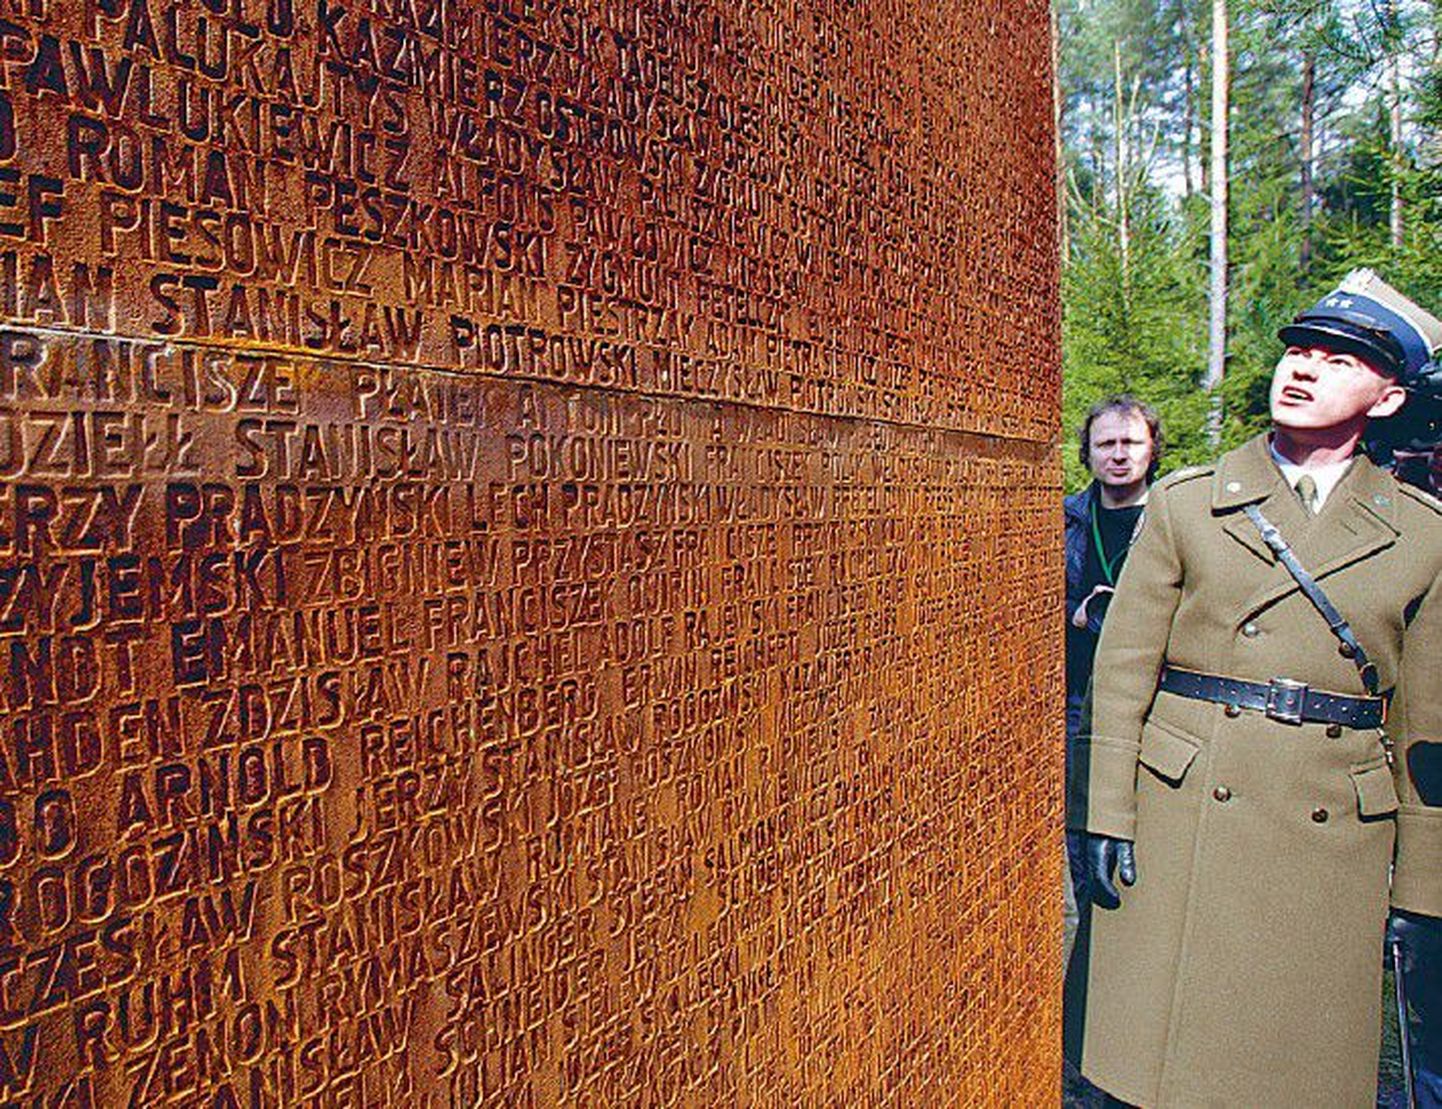 Польский солдат в лесу Катыни рассматривает мемориал, установленный на месте массового убийства его соотечественников, на стене которого высечены имена жертв кровавой бойни.